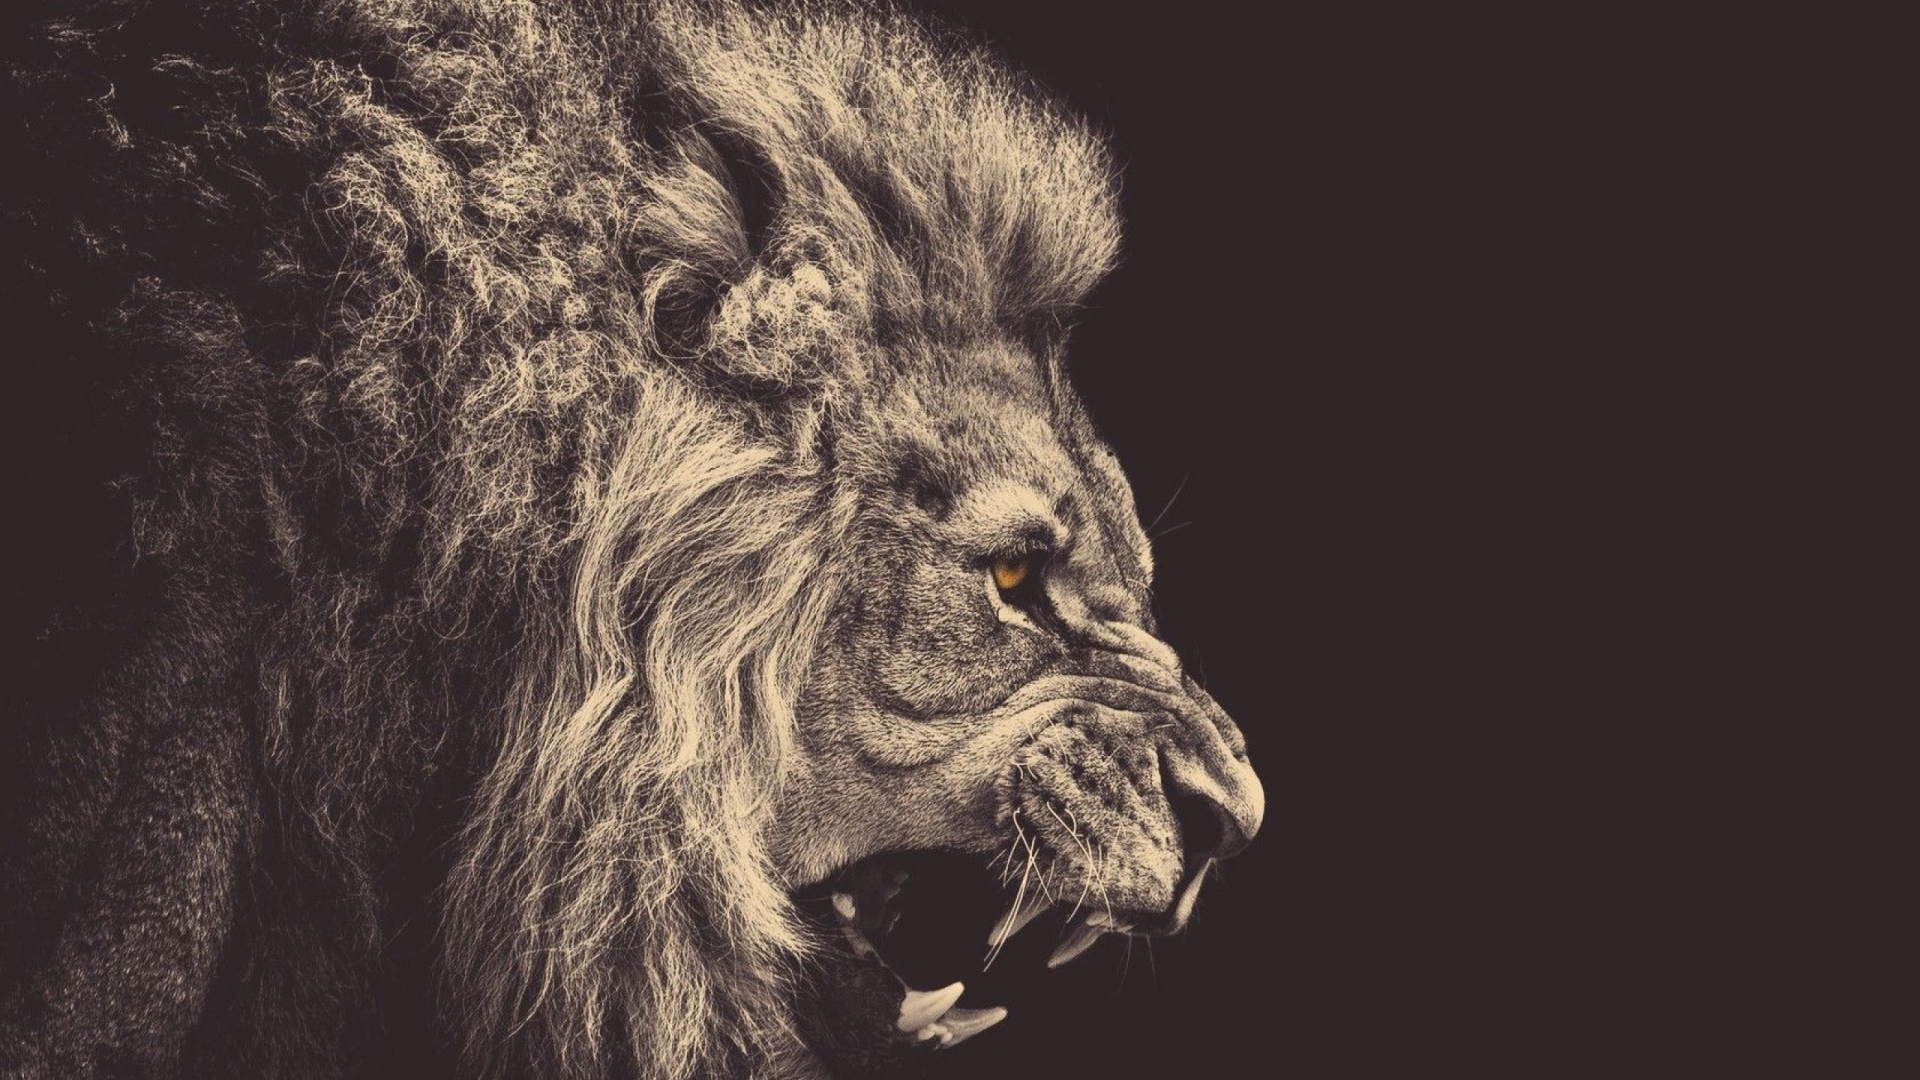 Lion photo wallpaper